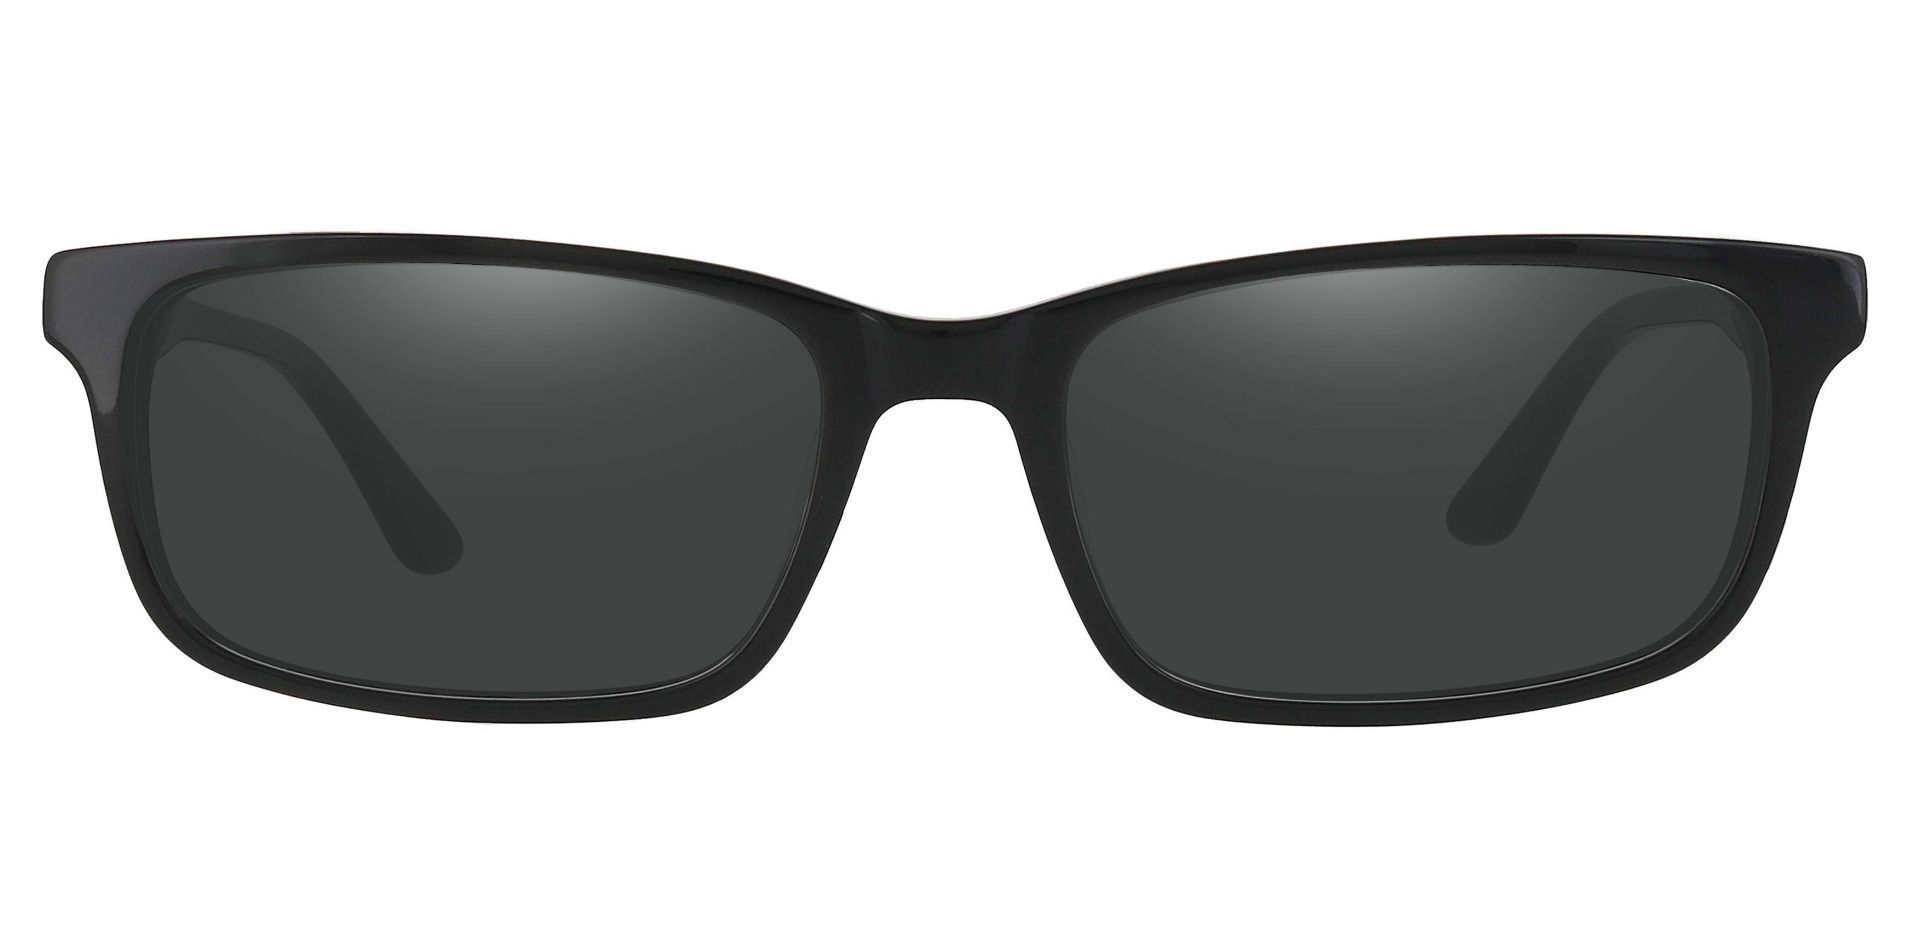 Hendrix Rectangle Progressive Sunglasses - Black Frame With Gray Lenses